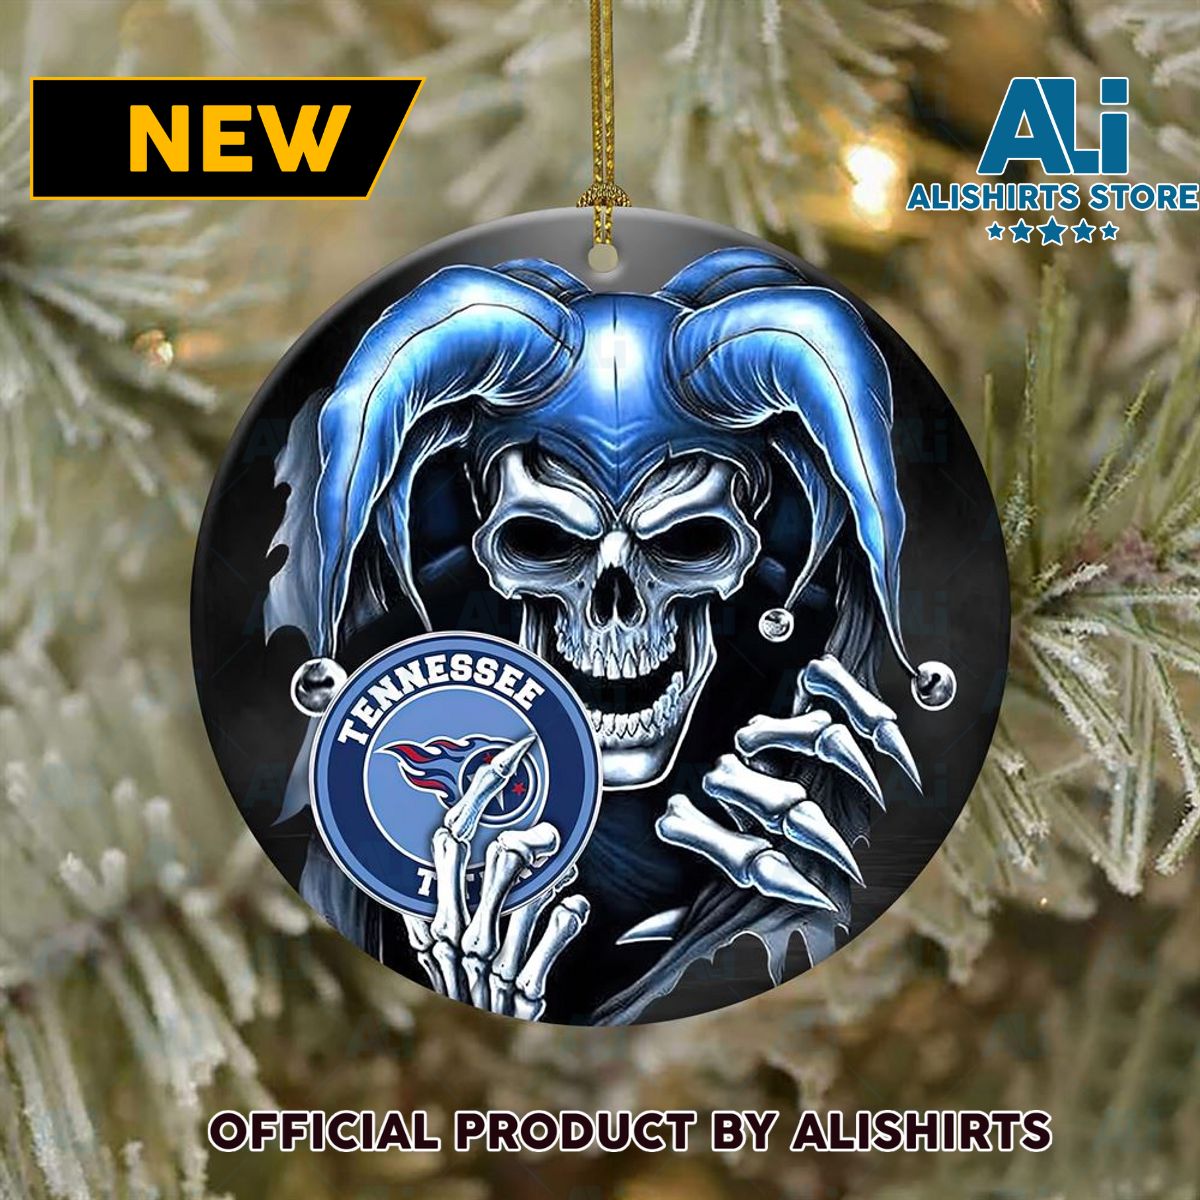 Tennessee Titans Skull Joker NFL Christmas Ornaments